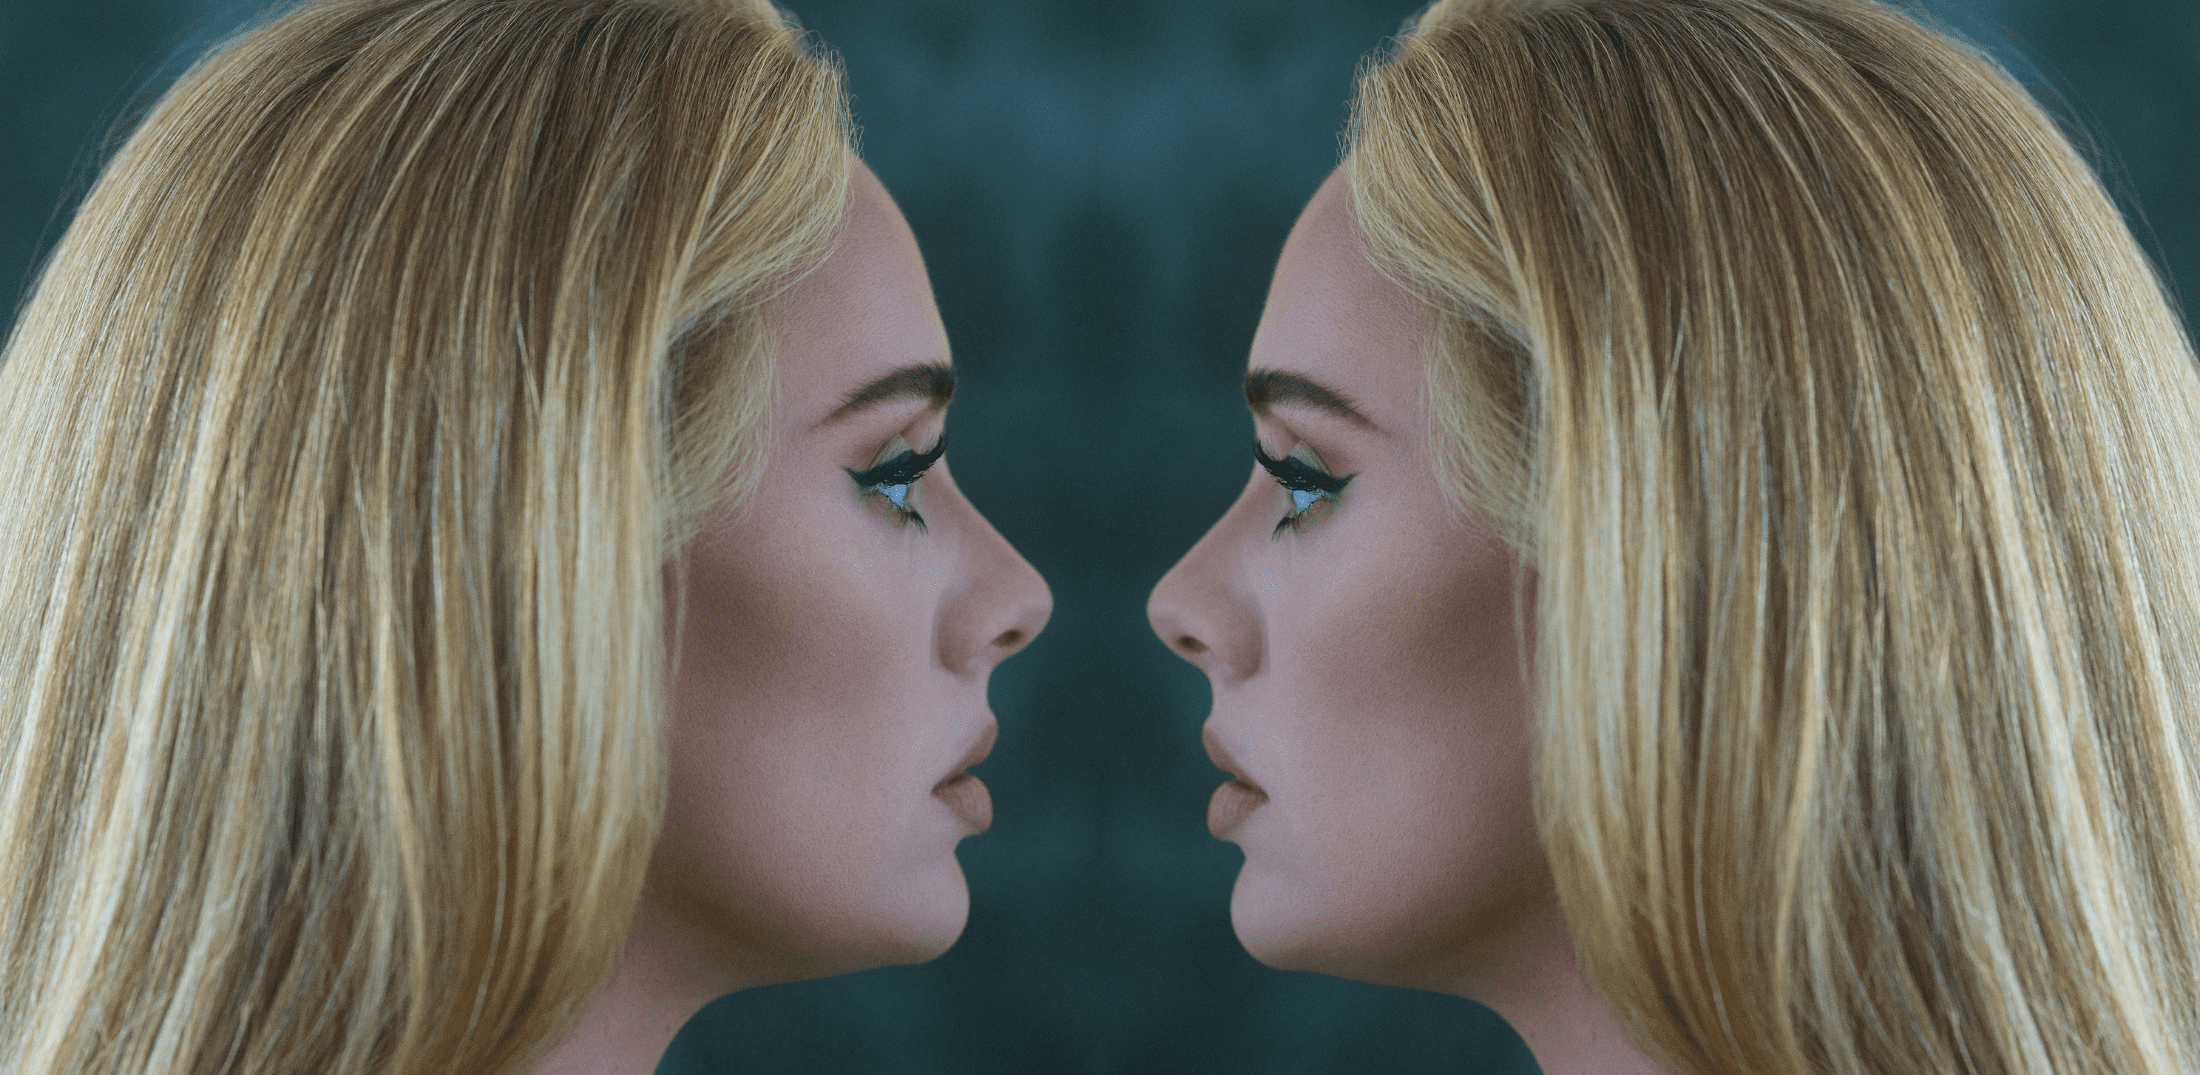 Η Adele κυκλοφορεί το νέο άλμπουμ: "30" - Το προσωπικό σημείωμά της